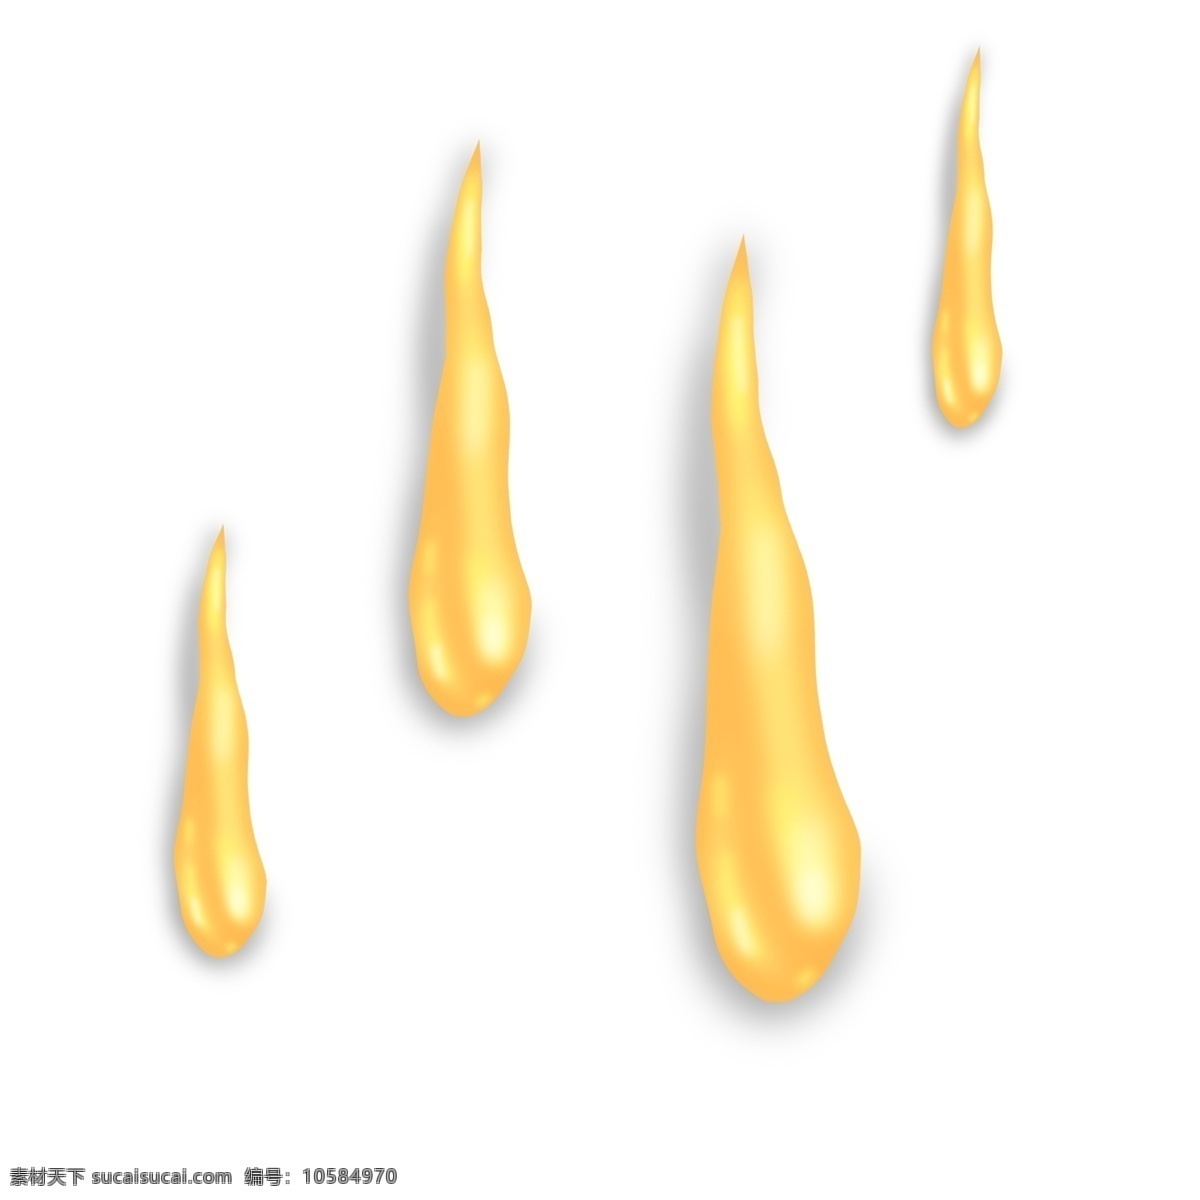 金色 立体 下落 油 滴 油水 油滴 滴下 滴落 下降 滑落 黄色 金闪闪 闪耀 油状 水流 卡通